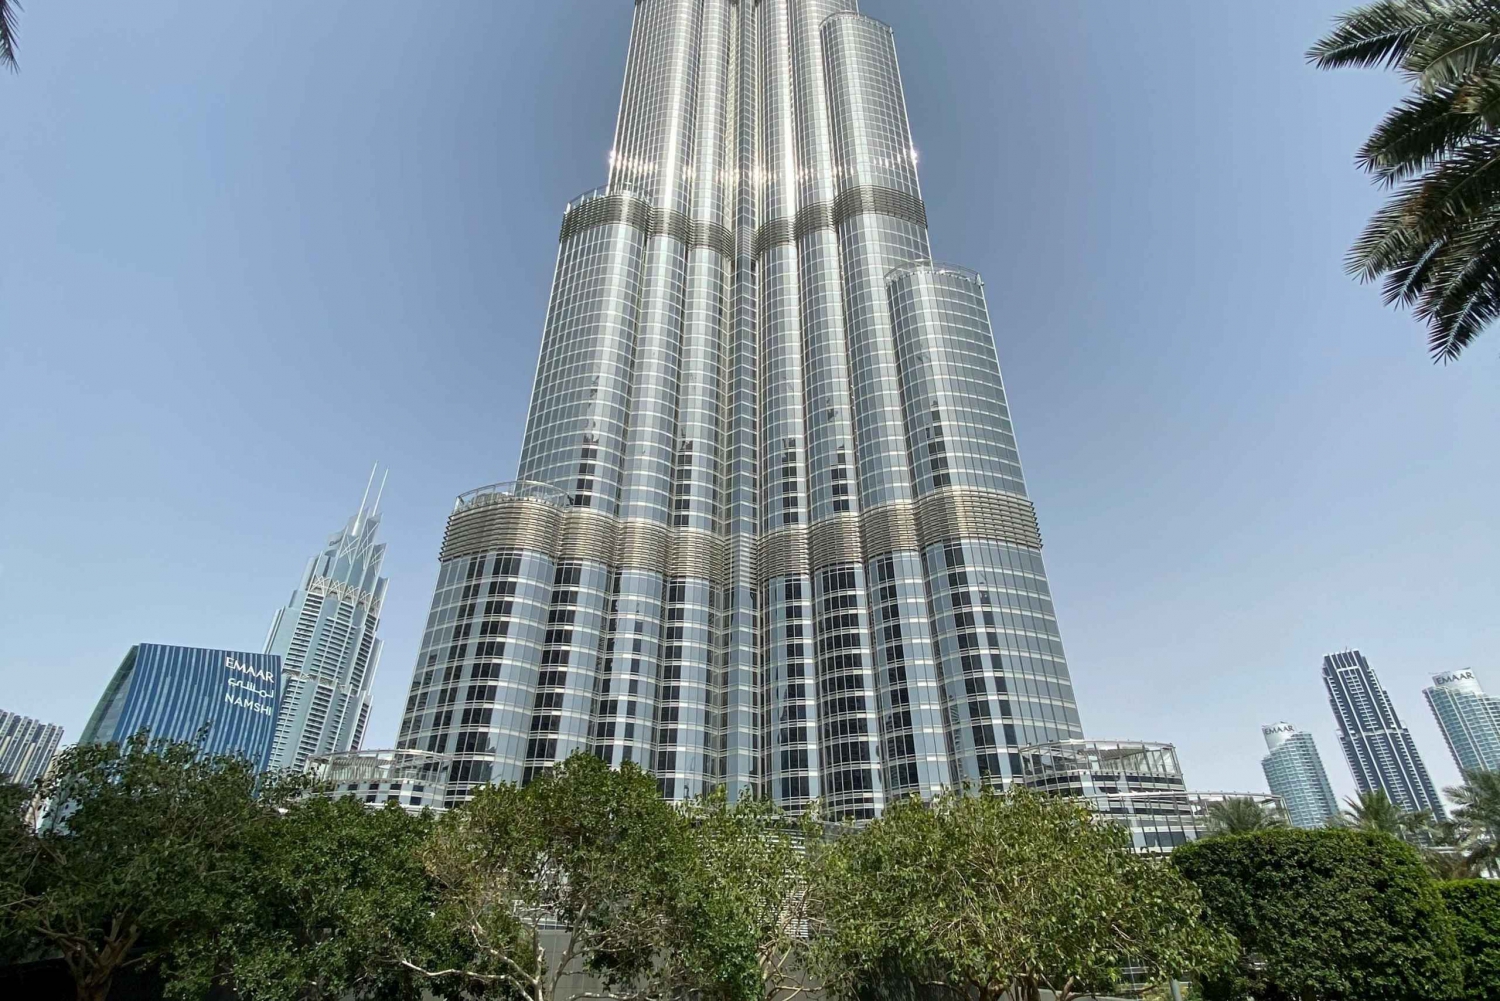 Le 10 attrazioni più famose di Dubai con ingresso al Burj Khalifa